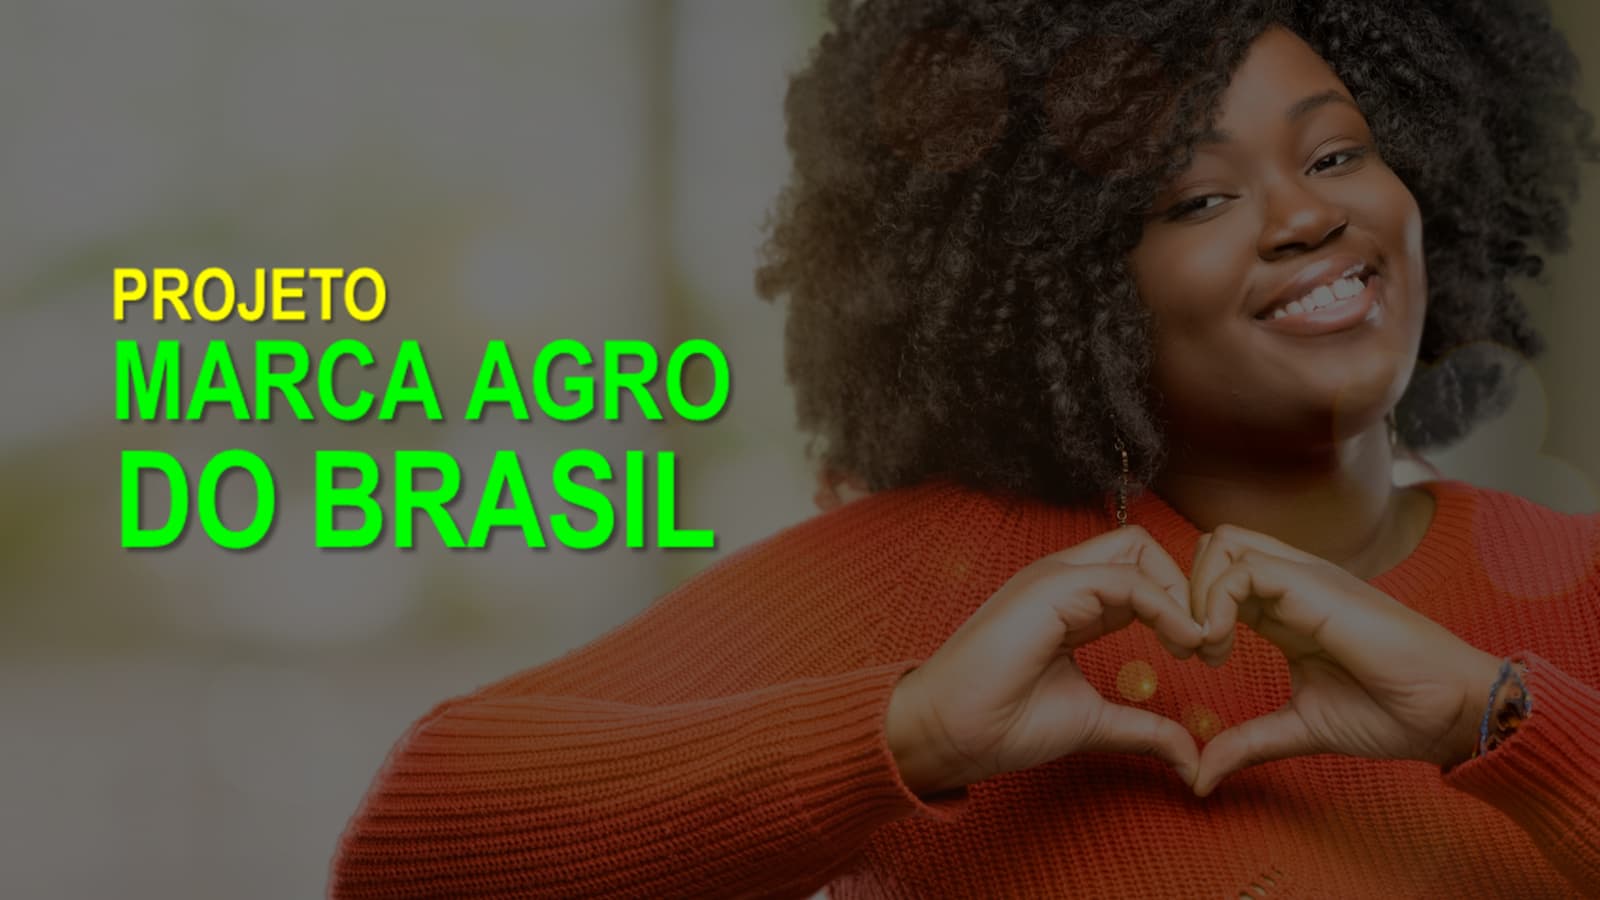 Projeto Marca Agro do Brasil pretende fazer do Agro uma